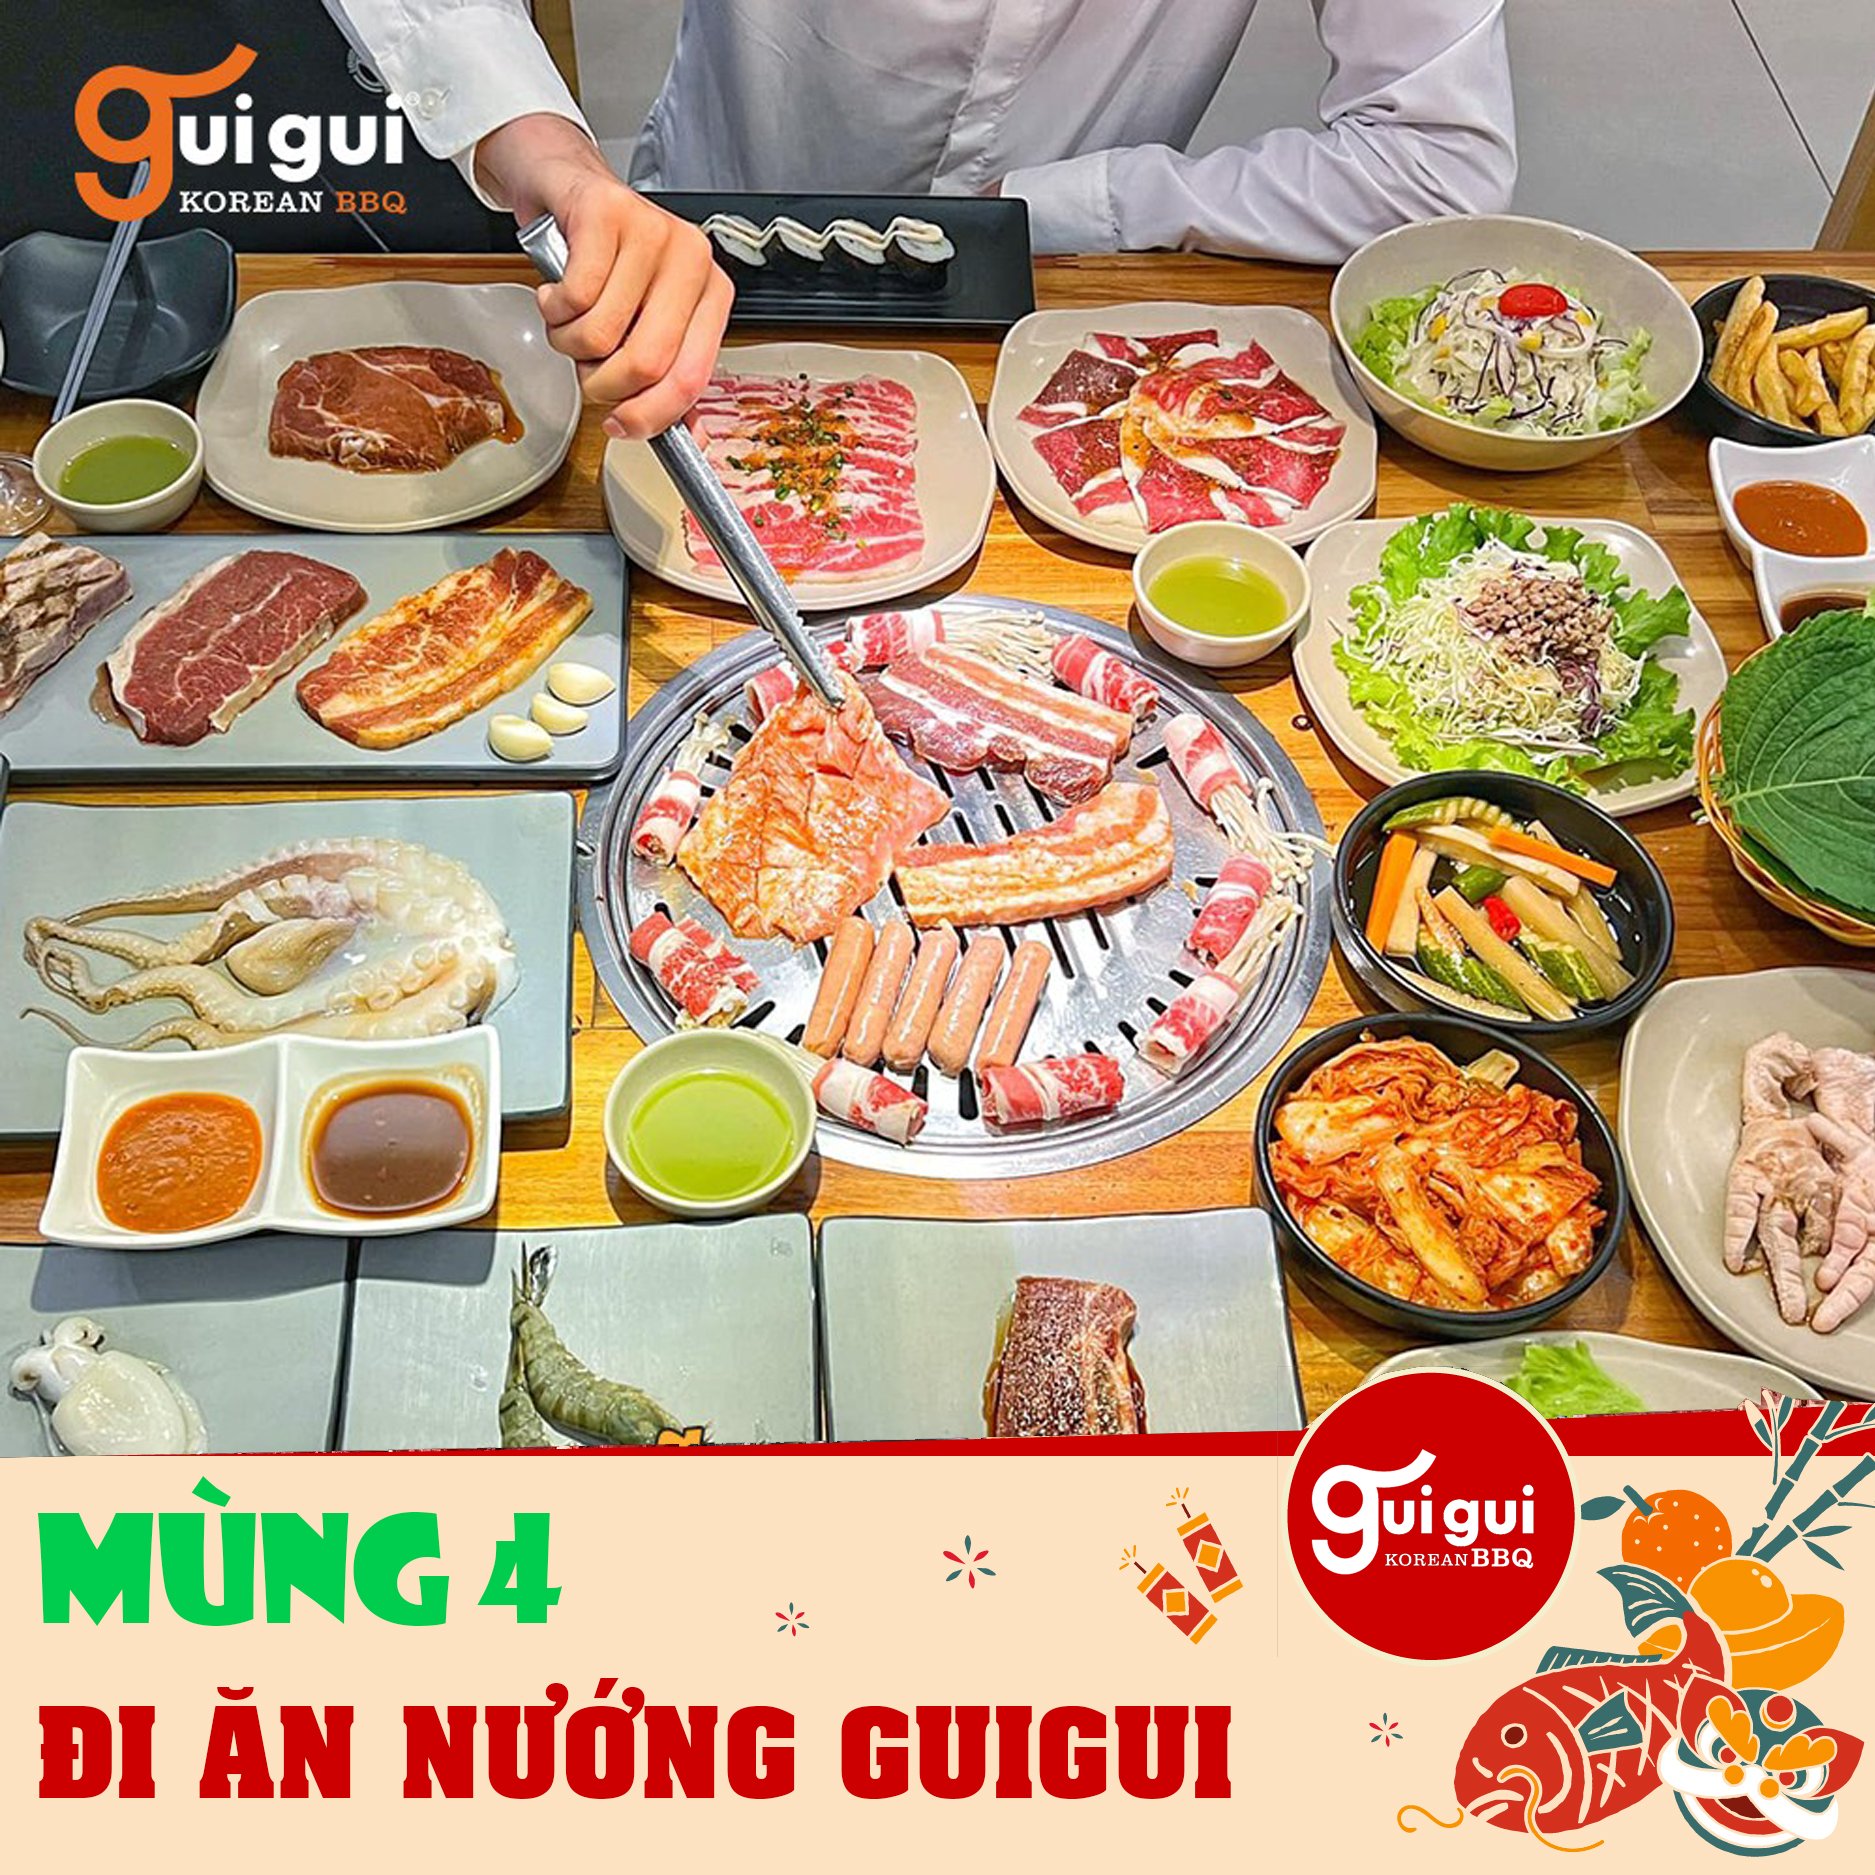 Guigui - Khám phá Vị Ngọt Cay của Lẩu Nướng Hàn Quốc tại Hà Nội